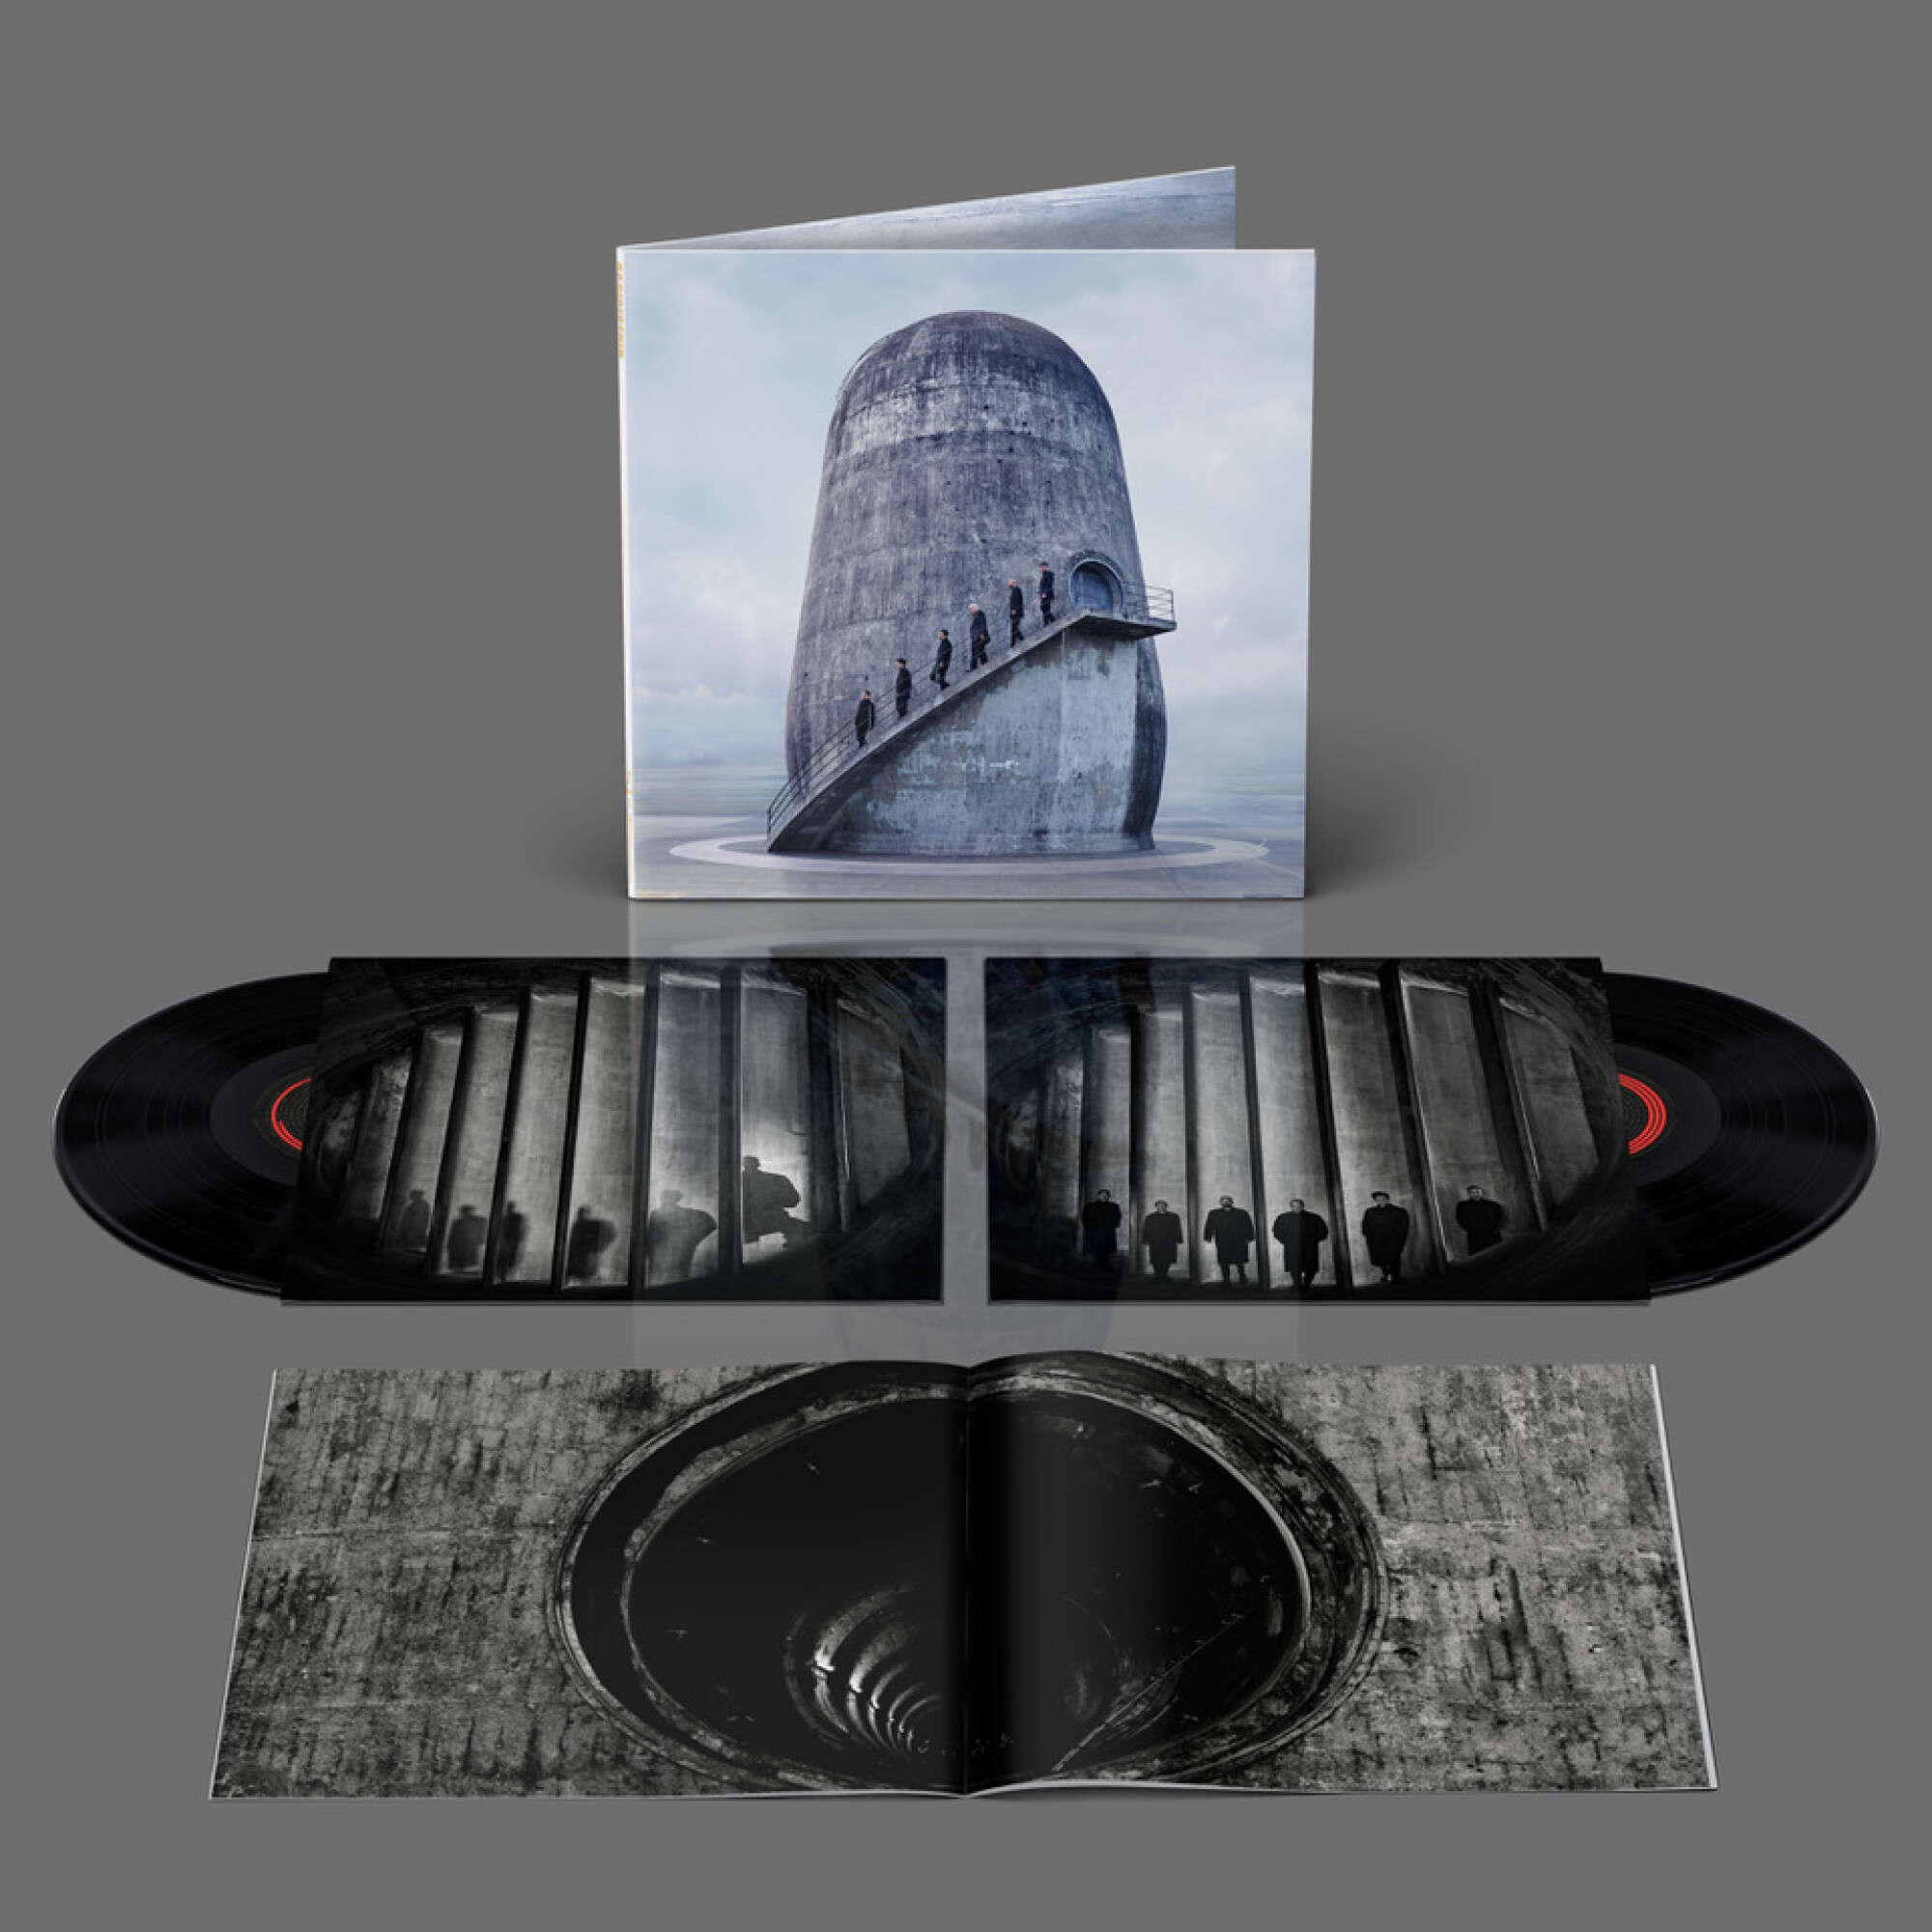 Rammstein Album ”Zeit”, Vinyl